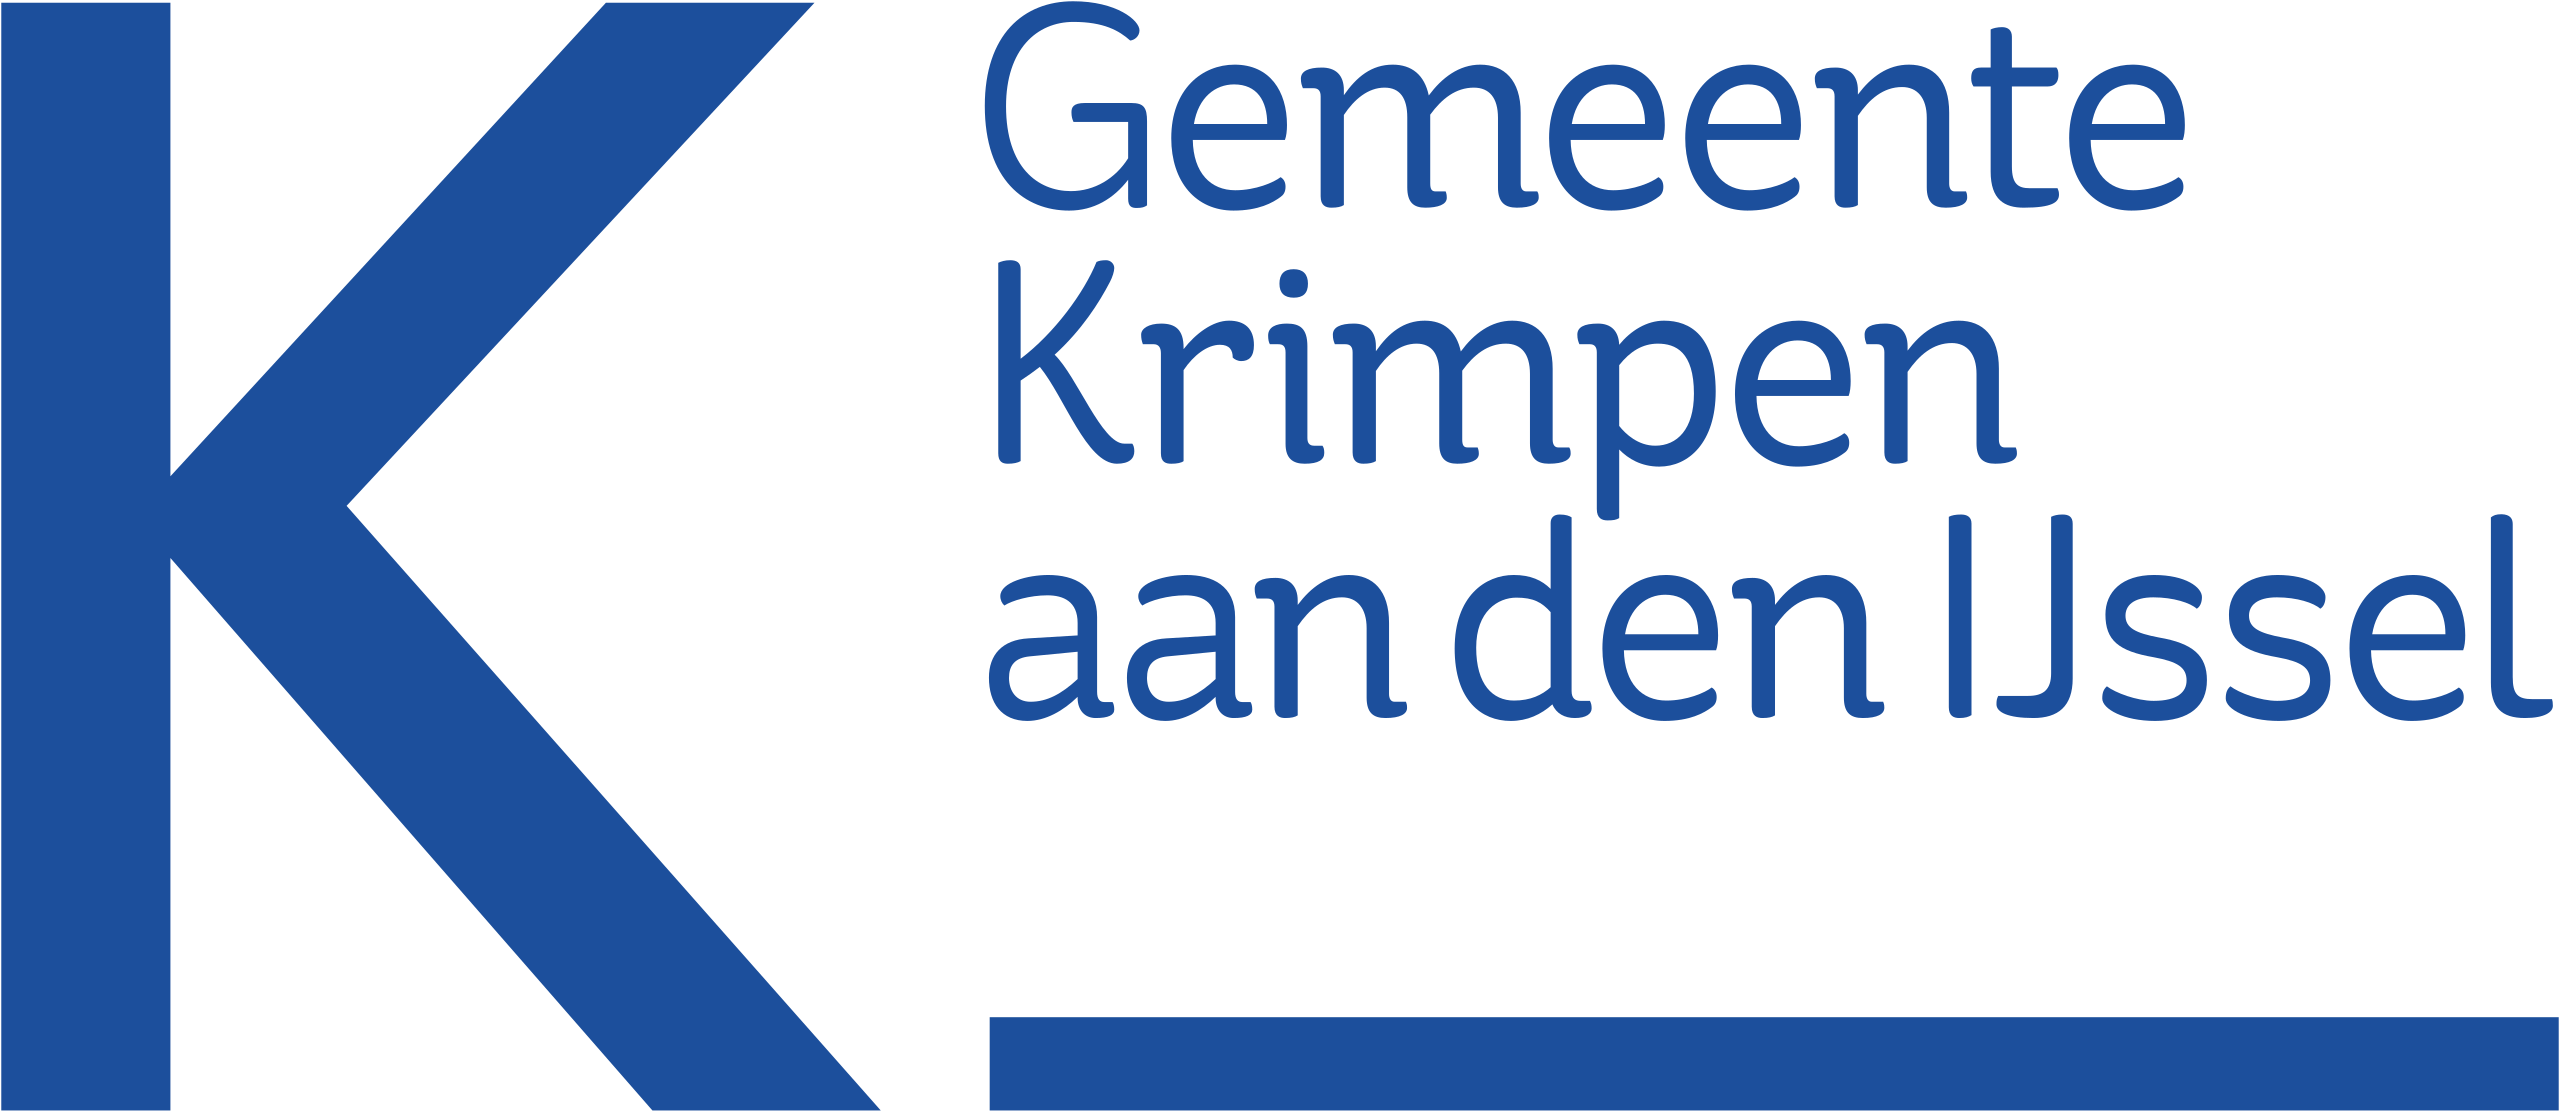 Gemeente_Krimpen_aan_den_IJssel_logo_02.svg